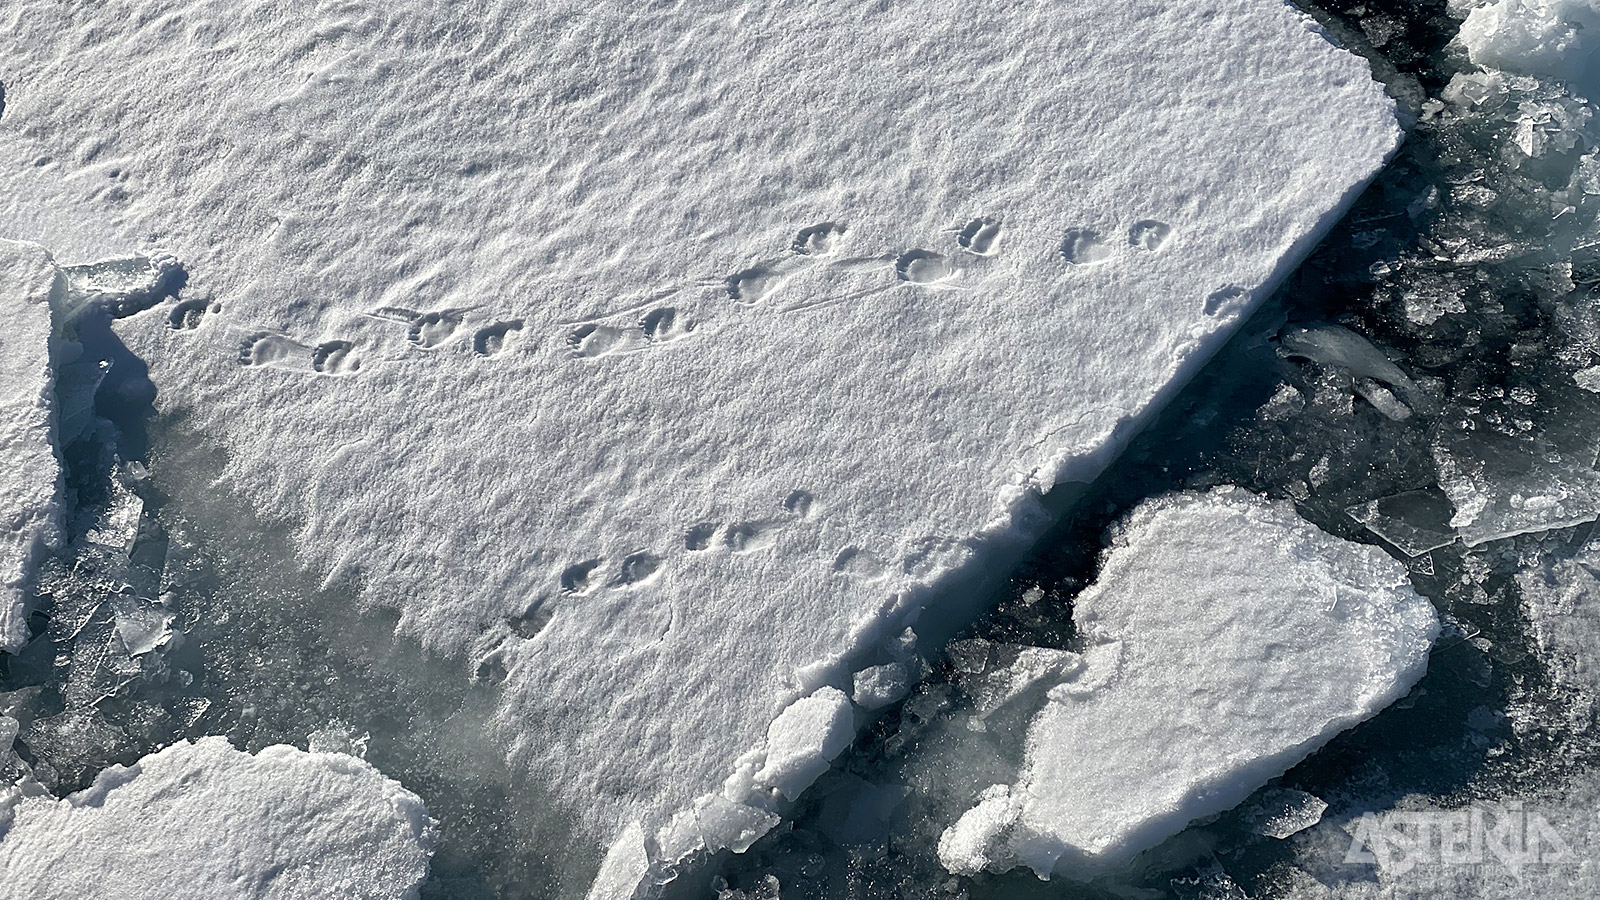 Voetsporen in de sneeuw verraden de aanwezigheid van ijsberen